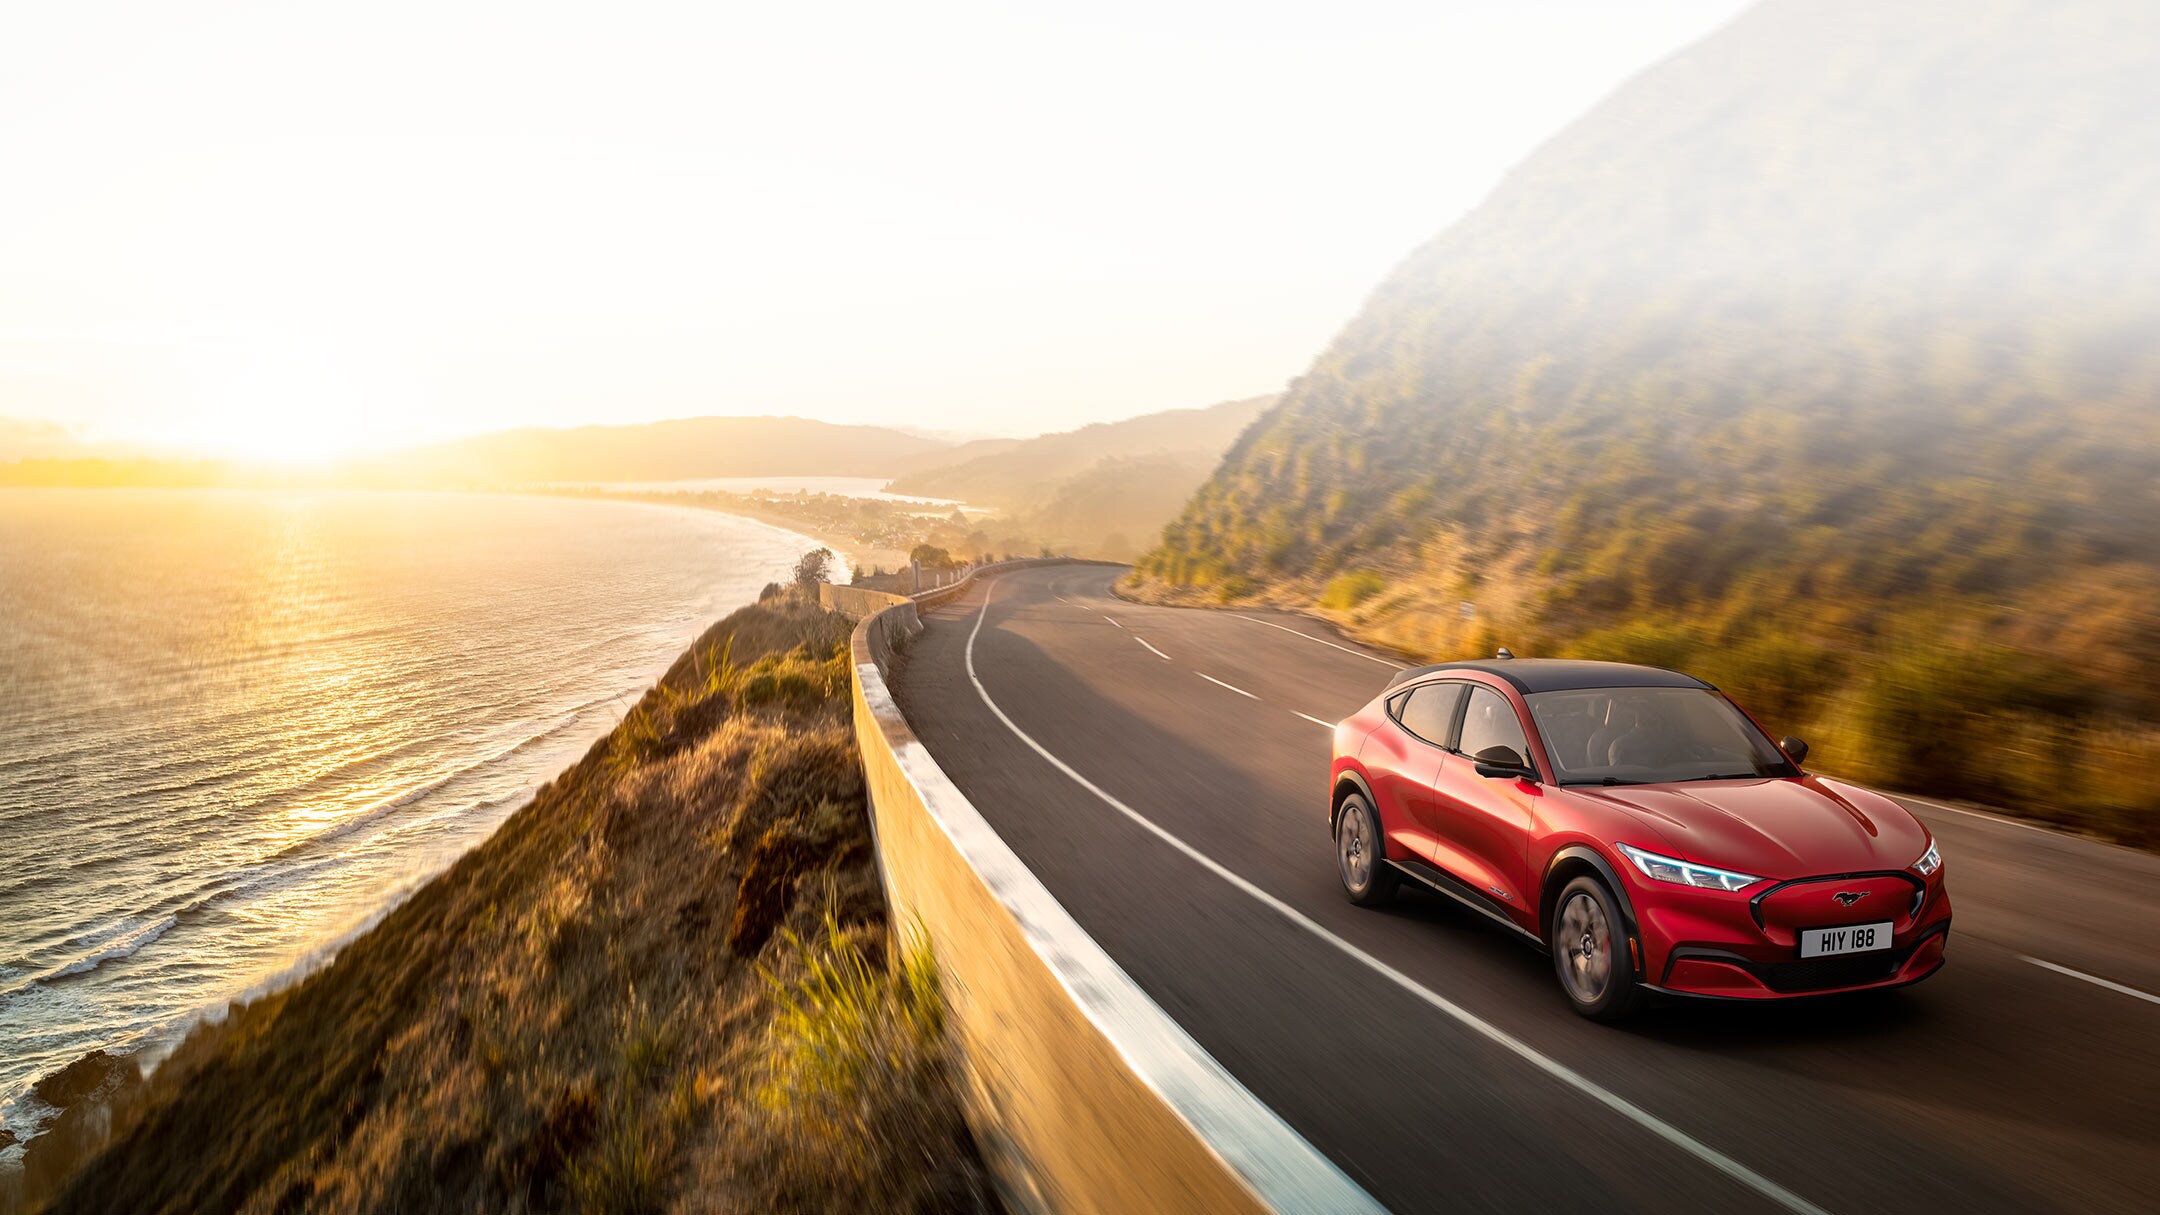 Ford vollelektrische Fahrzeuge. Ford Mustang Mach-E in Rot. Seitenansicht, fahrend auf Straße vor See mit baumbewachsenen Ufern